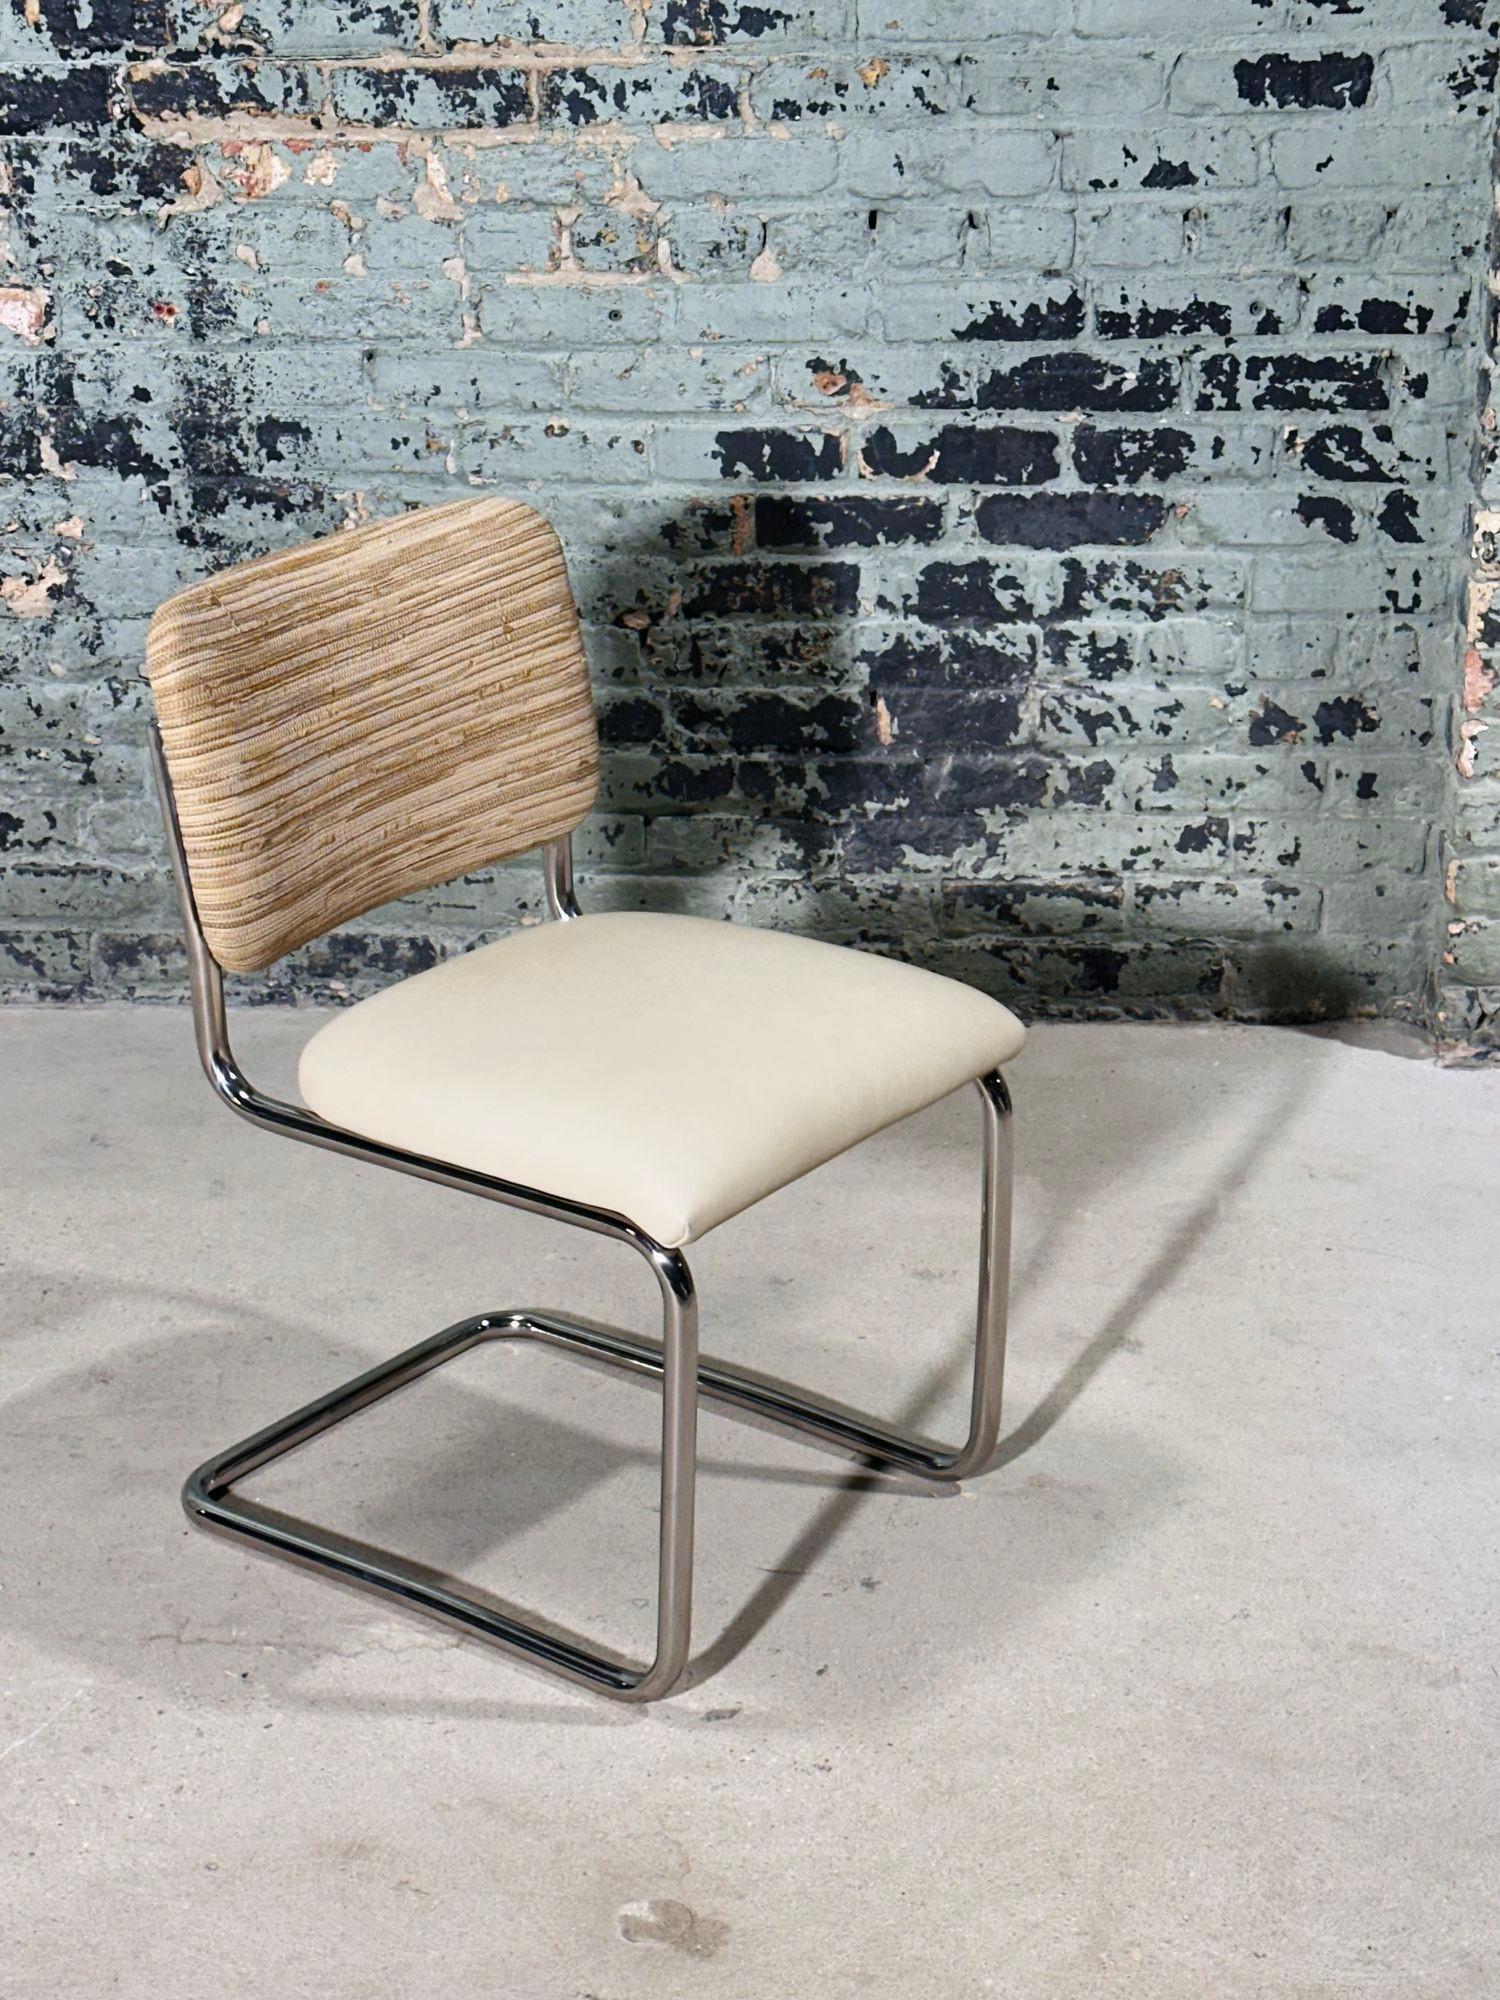 8 Marcel Breuer Cesca Side/Dining Chairs für Knoll, 1980. Die Rückenlehnen sind mit gewebtem Leder im Stil von Bottega Veneta gepolstert, die Sitzkissen sind aus geschmeidigem cremefarbenem Leder.
Maßnahme 31